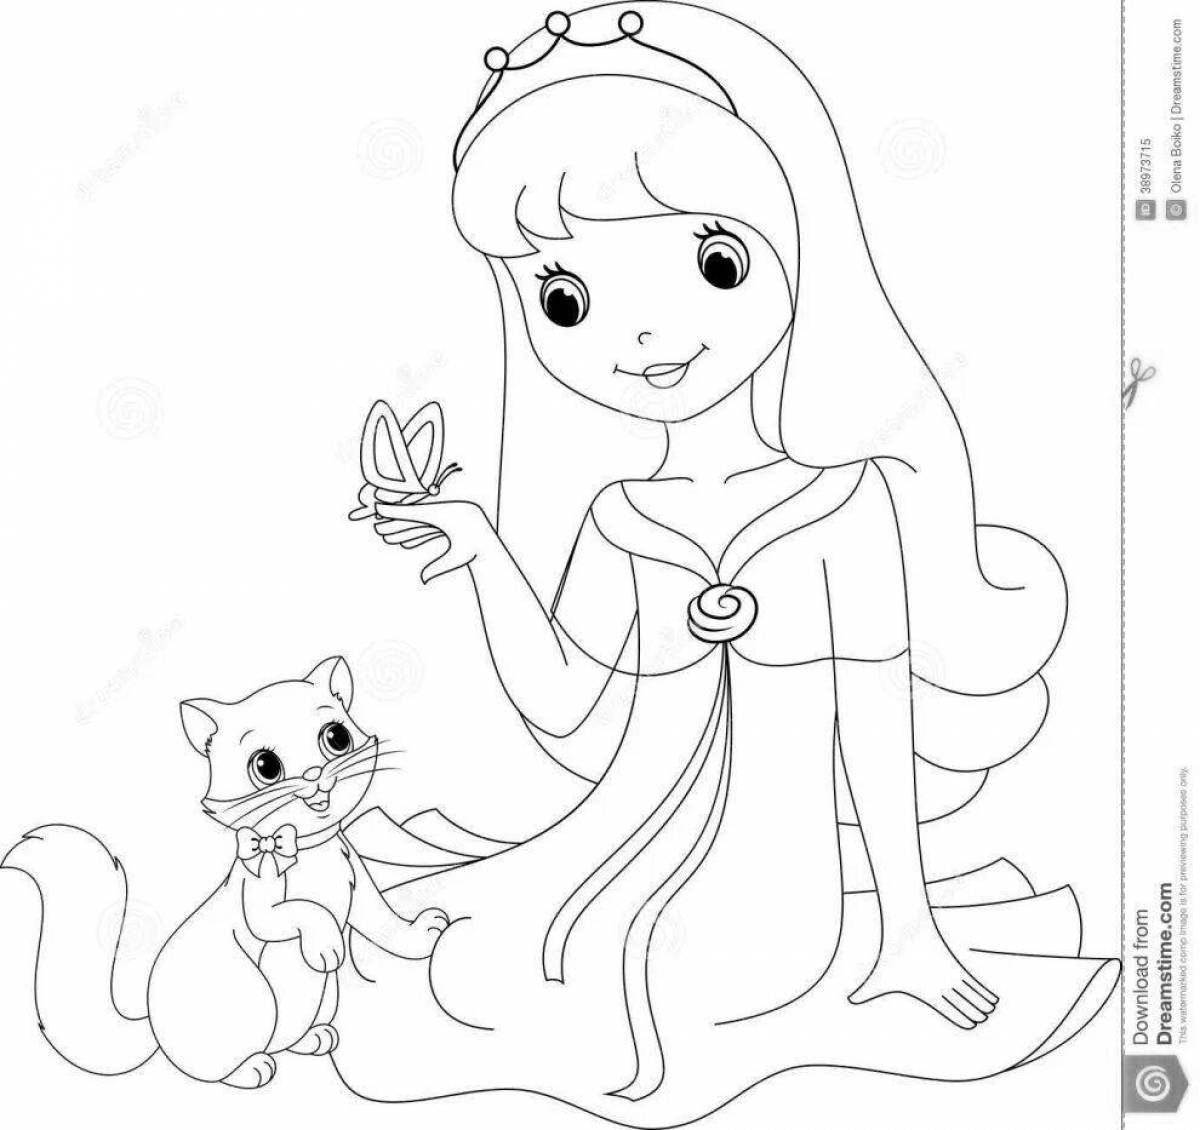 Princess with cat #2